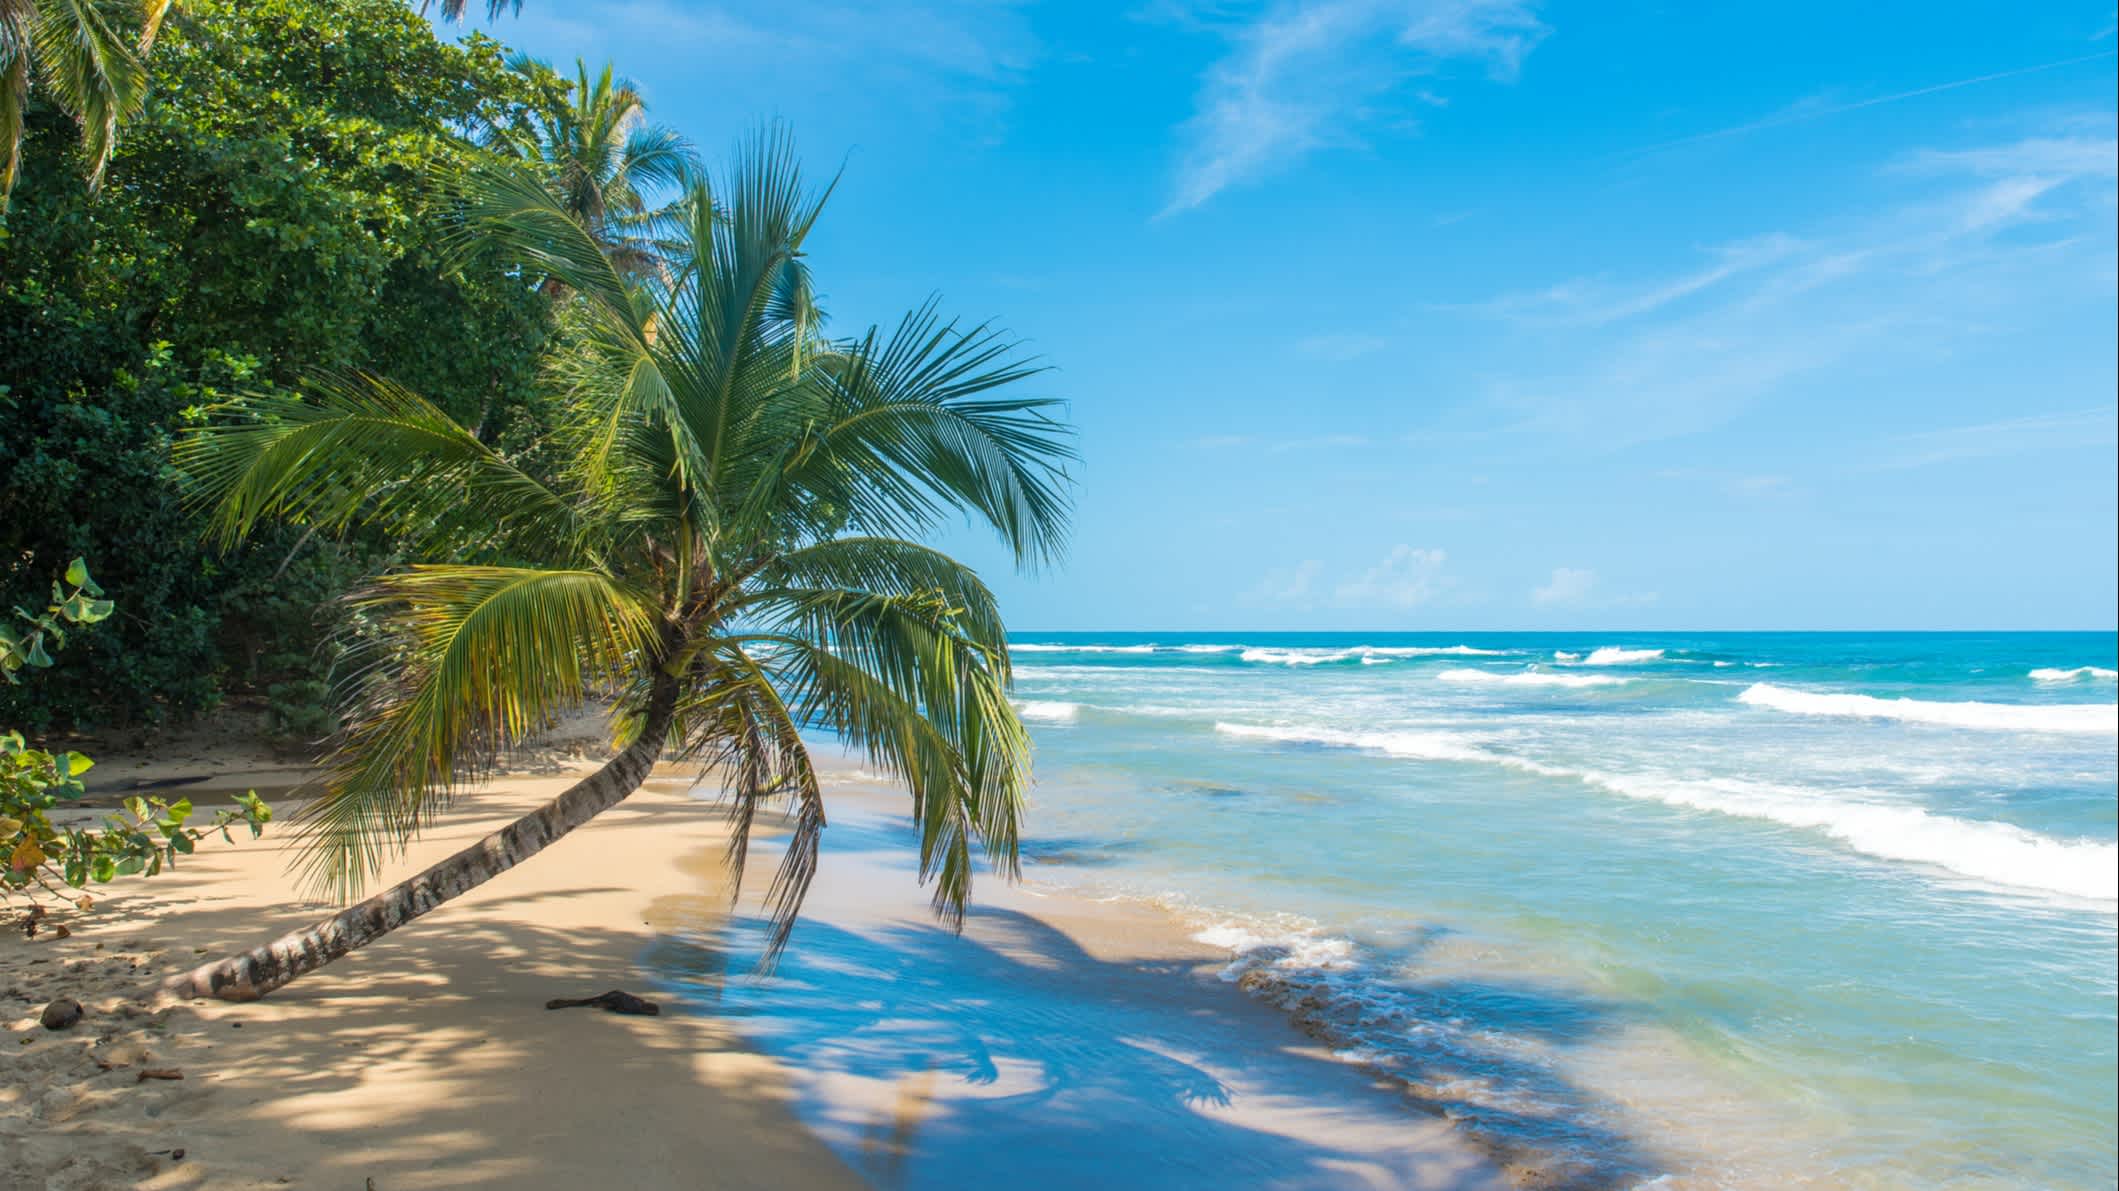 Playa Chiquita Strand in der Nähe von Puerto Viejo, Costa Rica.